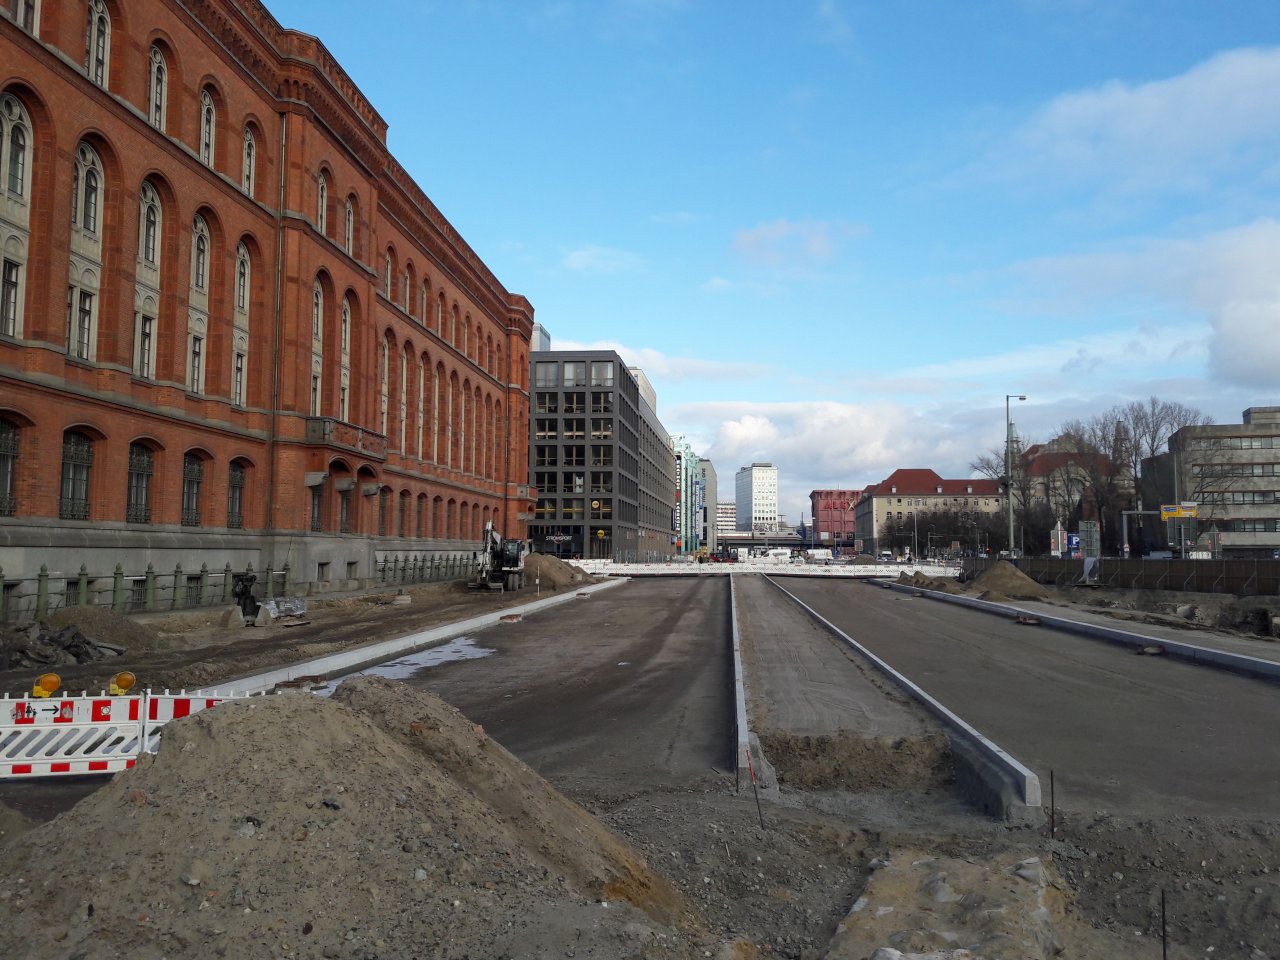 Neuer-Strassenverlauf-Rotes-Rathaus.jpg